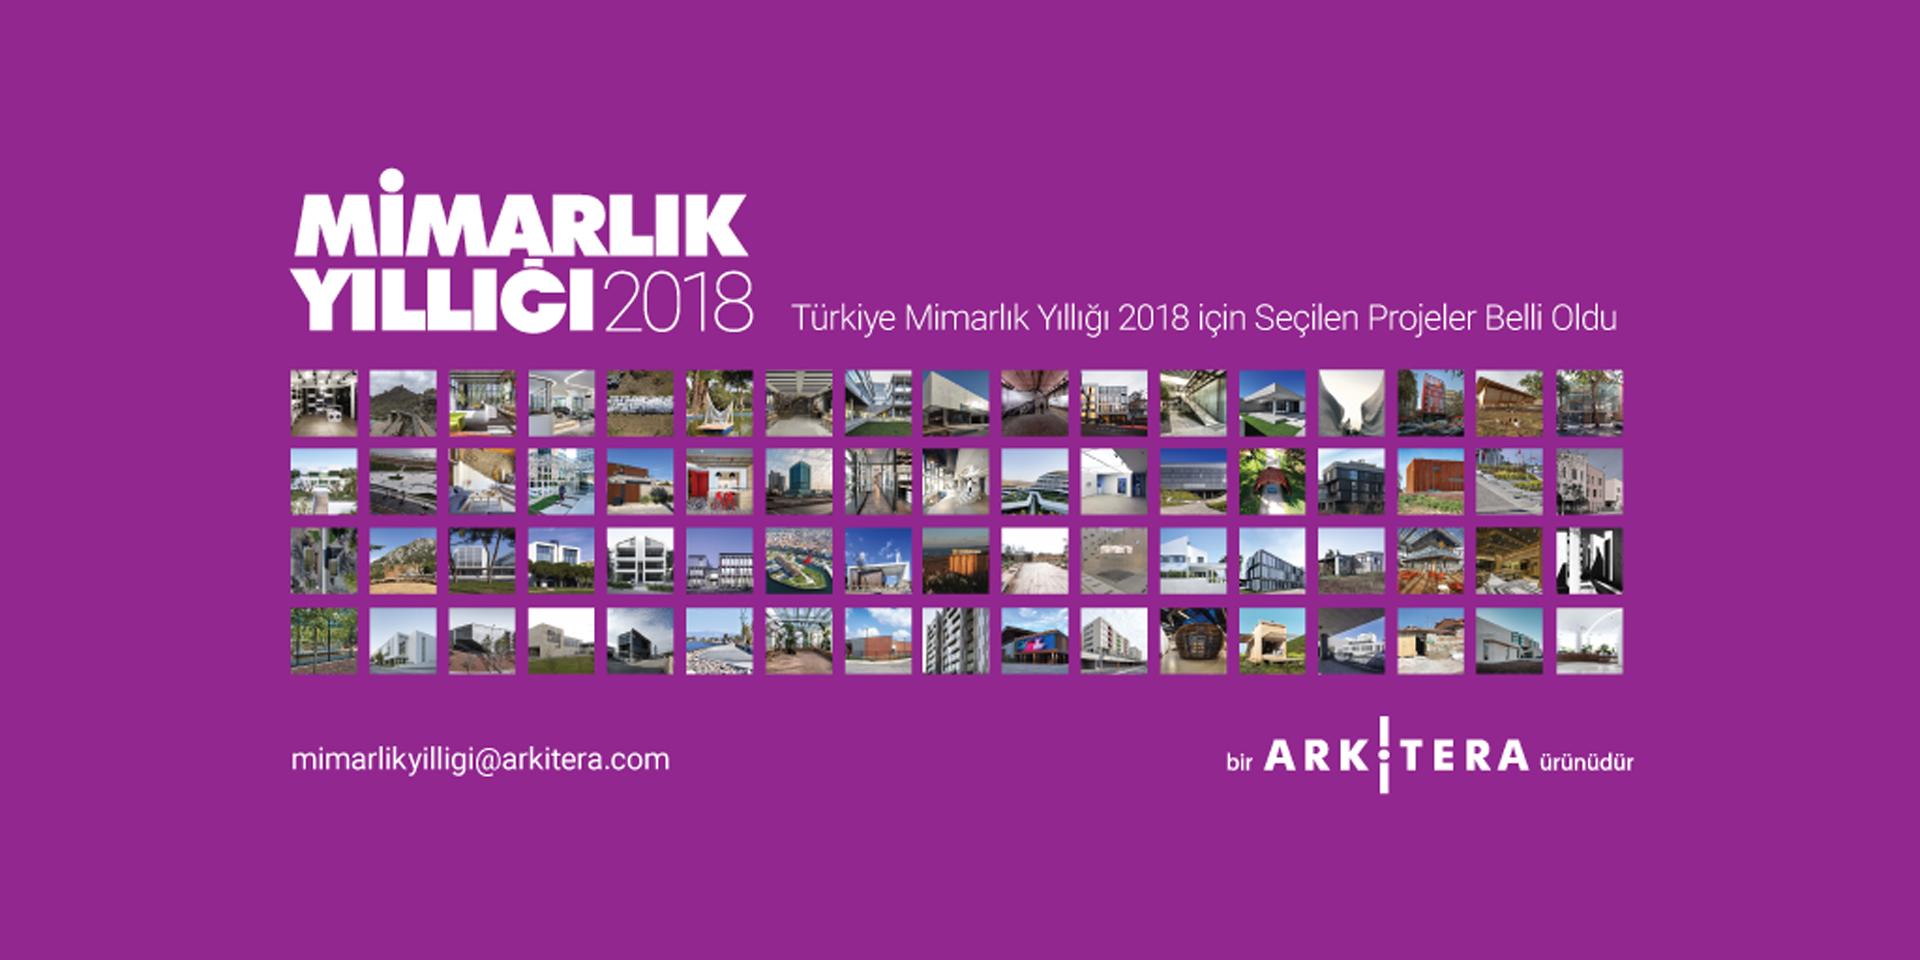 2019 // Arkitera - Türkiye Mimari Yıllık 2018